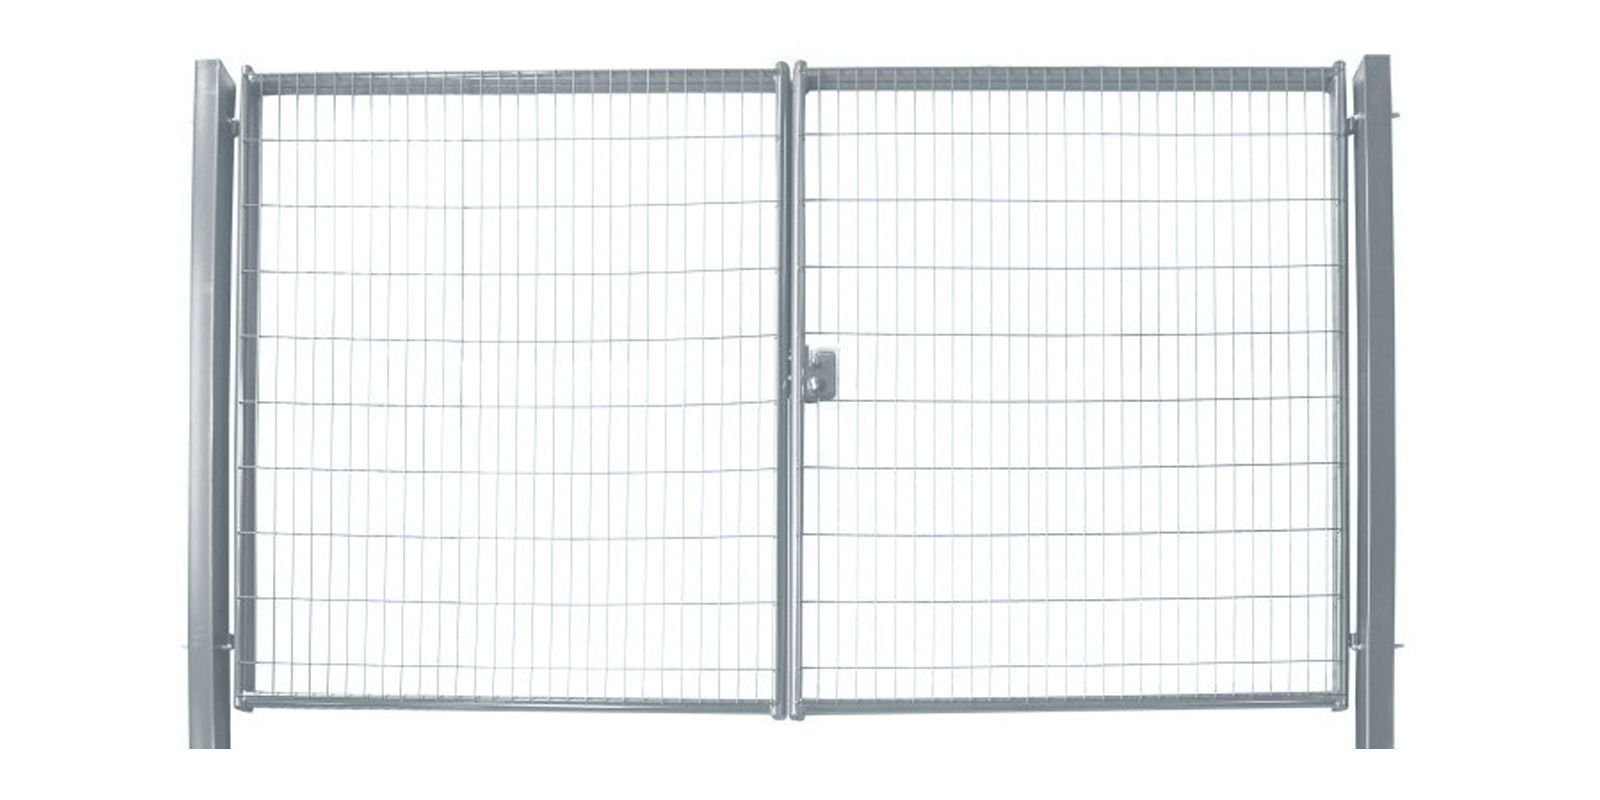 Ворота для панельного ограждения Medium, 1,53 м, ширина 6 м, изображение, фото | Сталь ТД